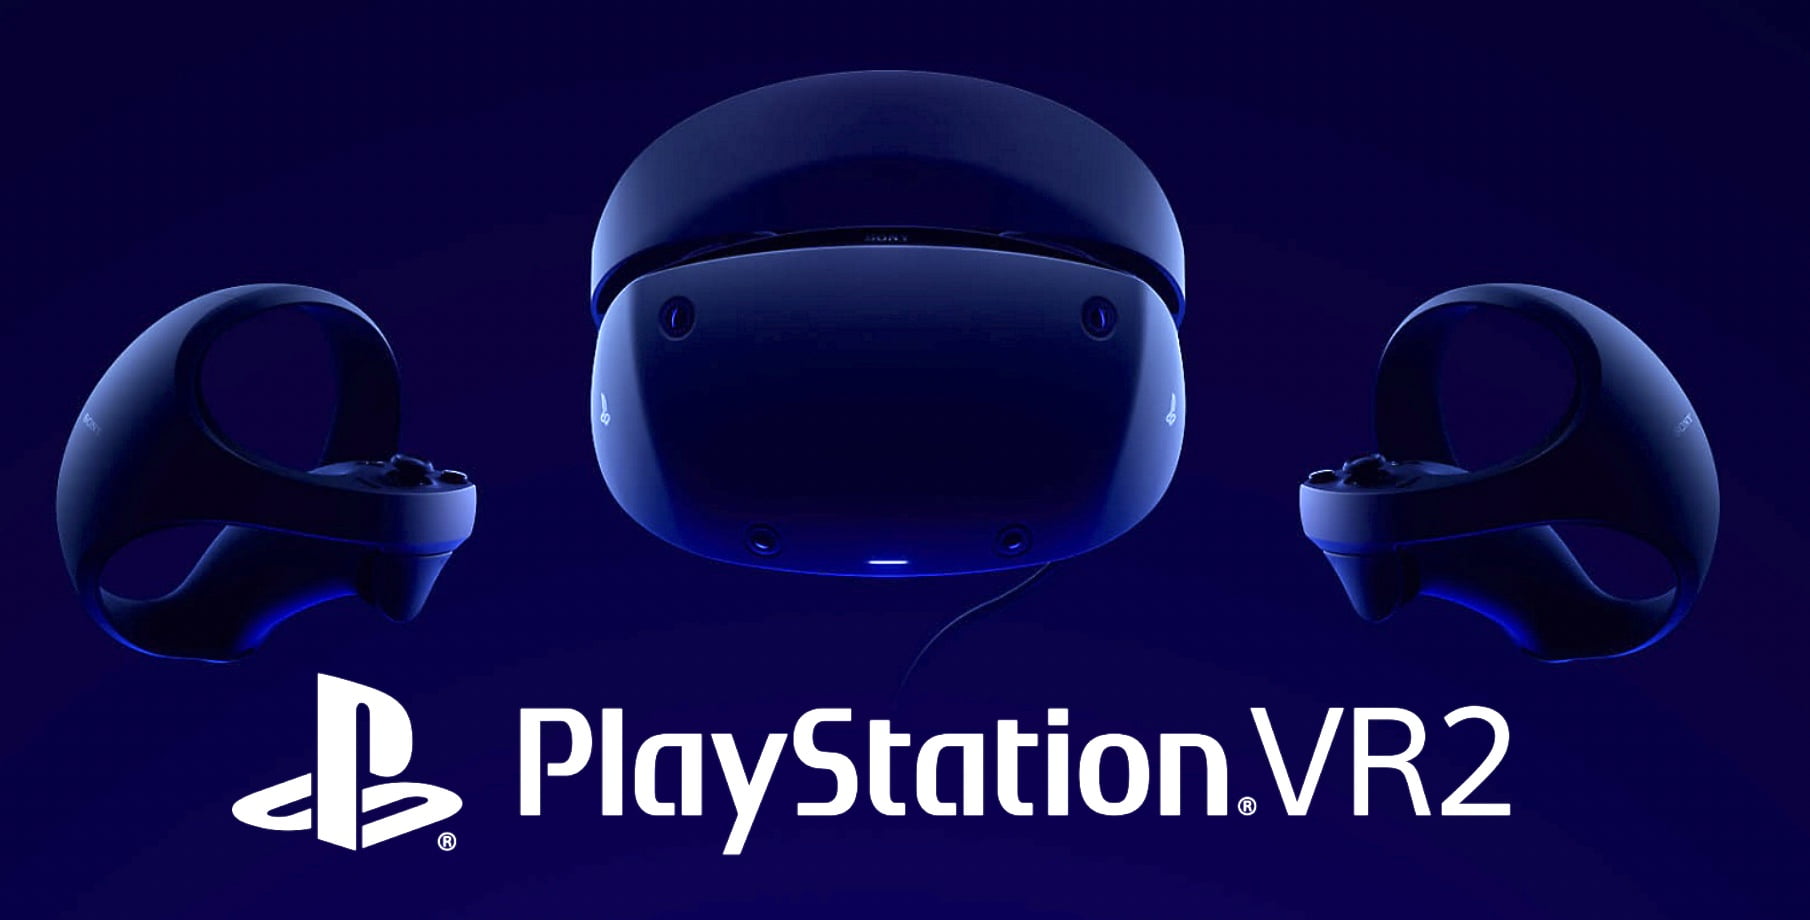 Nunc subscribere potes pro PlayStation VR 2 pre-ordine notificationes.